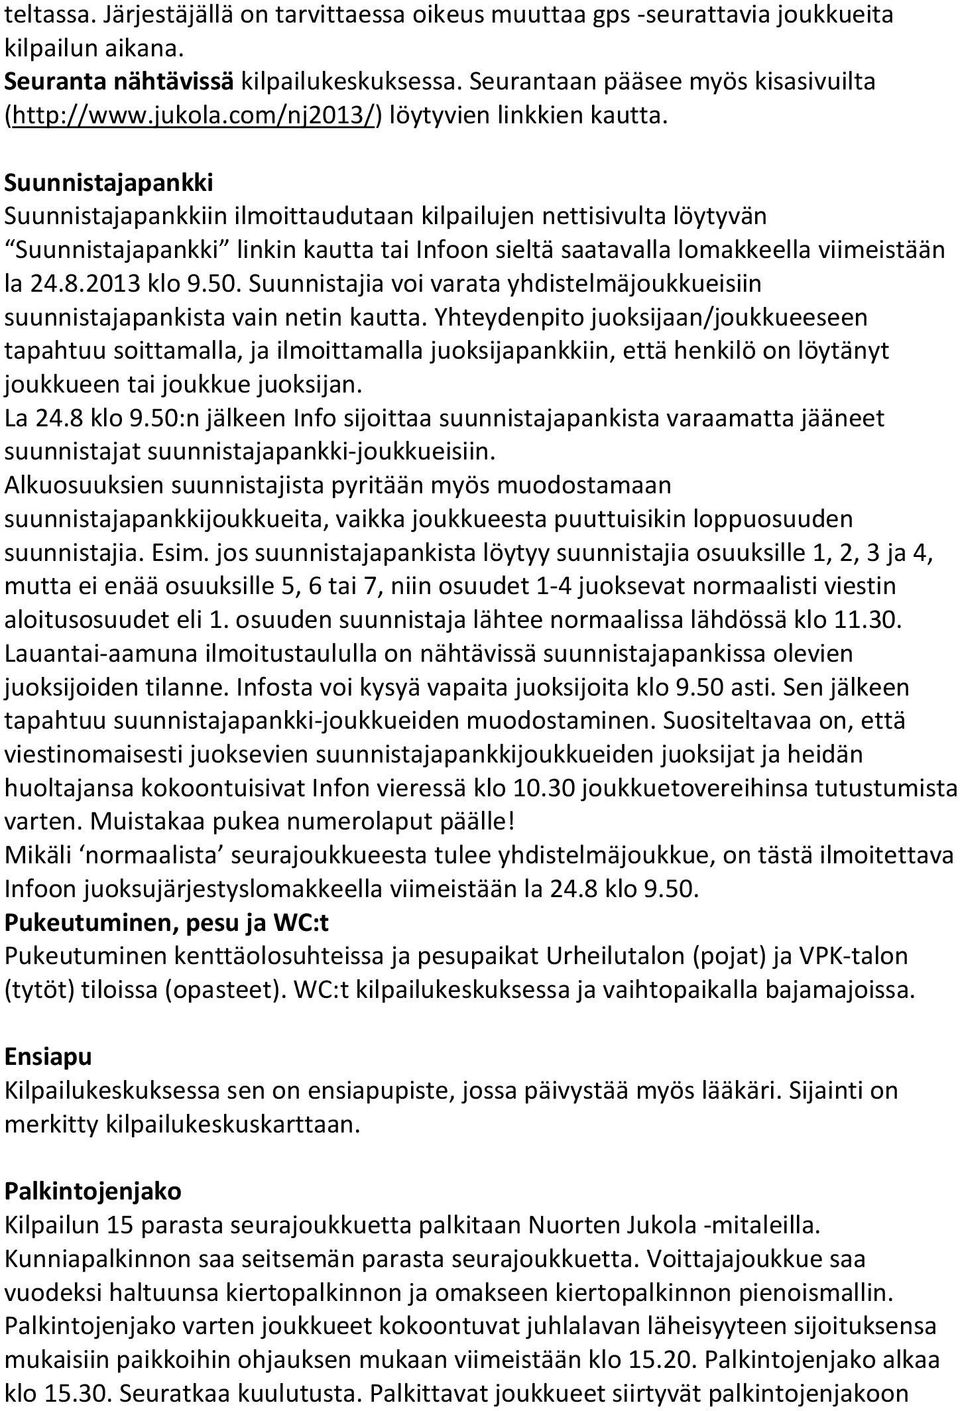 Suunnistajapankki Suunnistajapankkiin ilmoittaudutaan kilpailujen nettisivulta löytyvän Suunnistajapankki linkin kautta tai Infoon sieltä saatavalla lomakkeella viimeistään la 24.8.2013 klo 9.50.